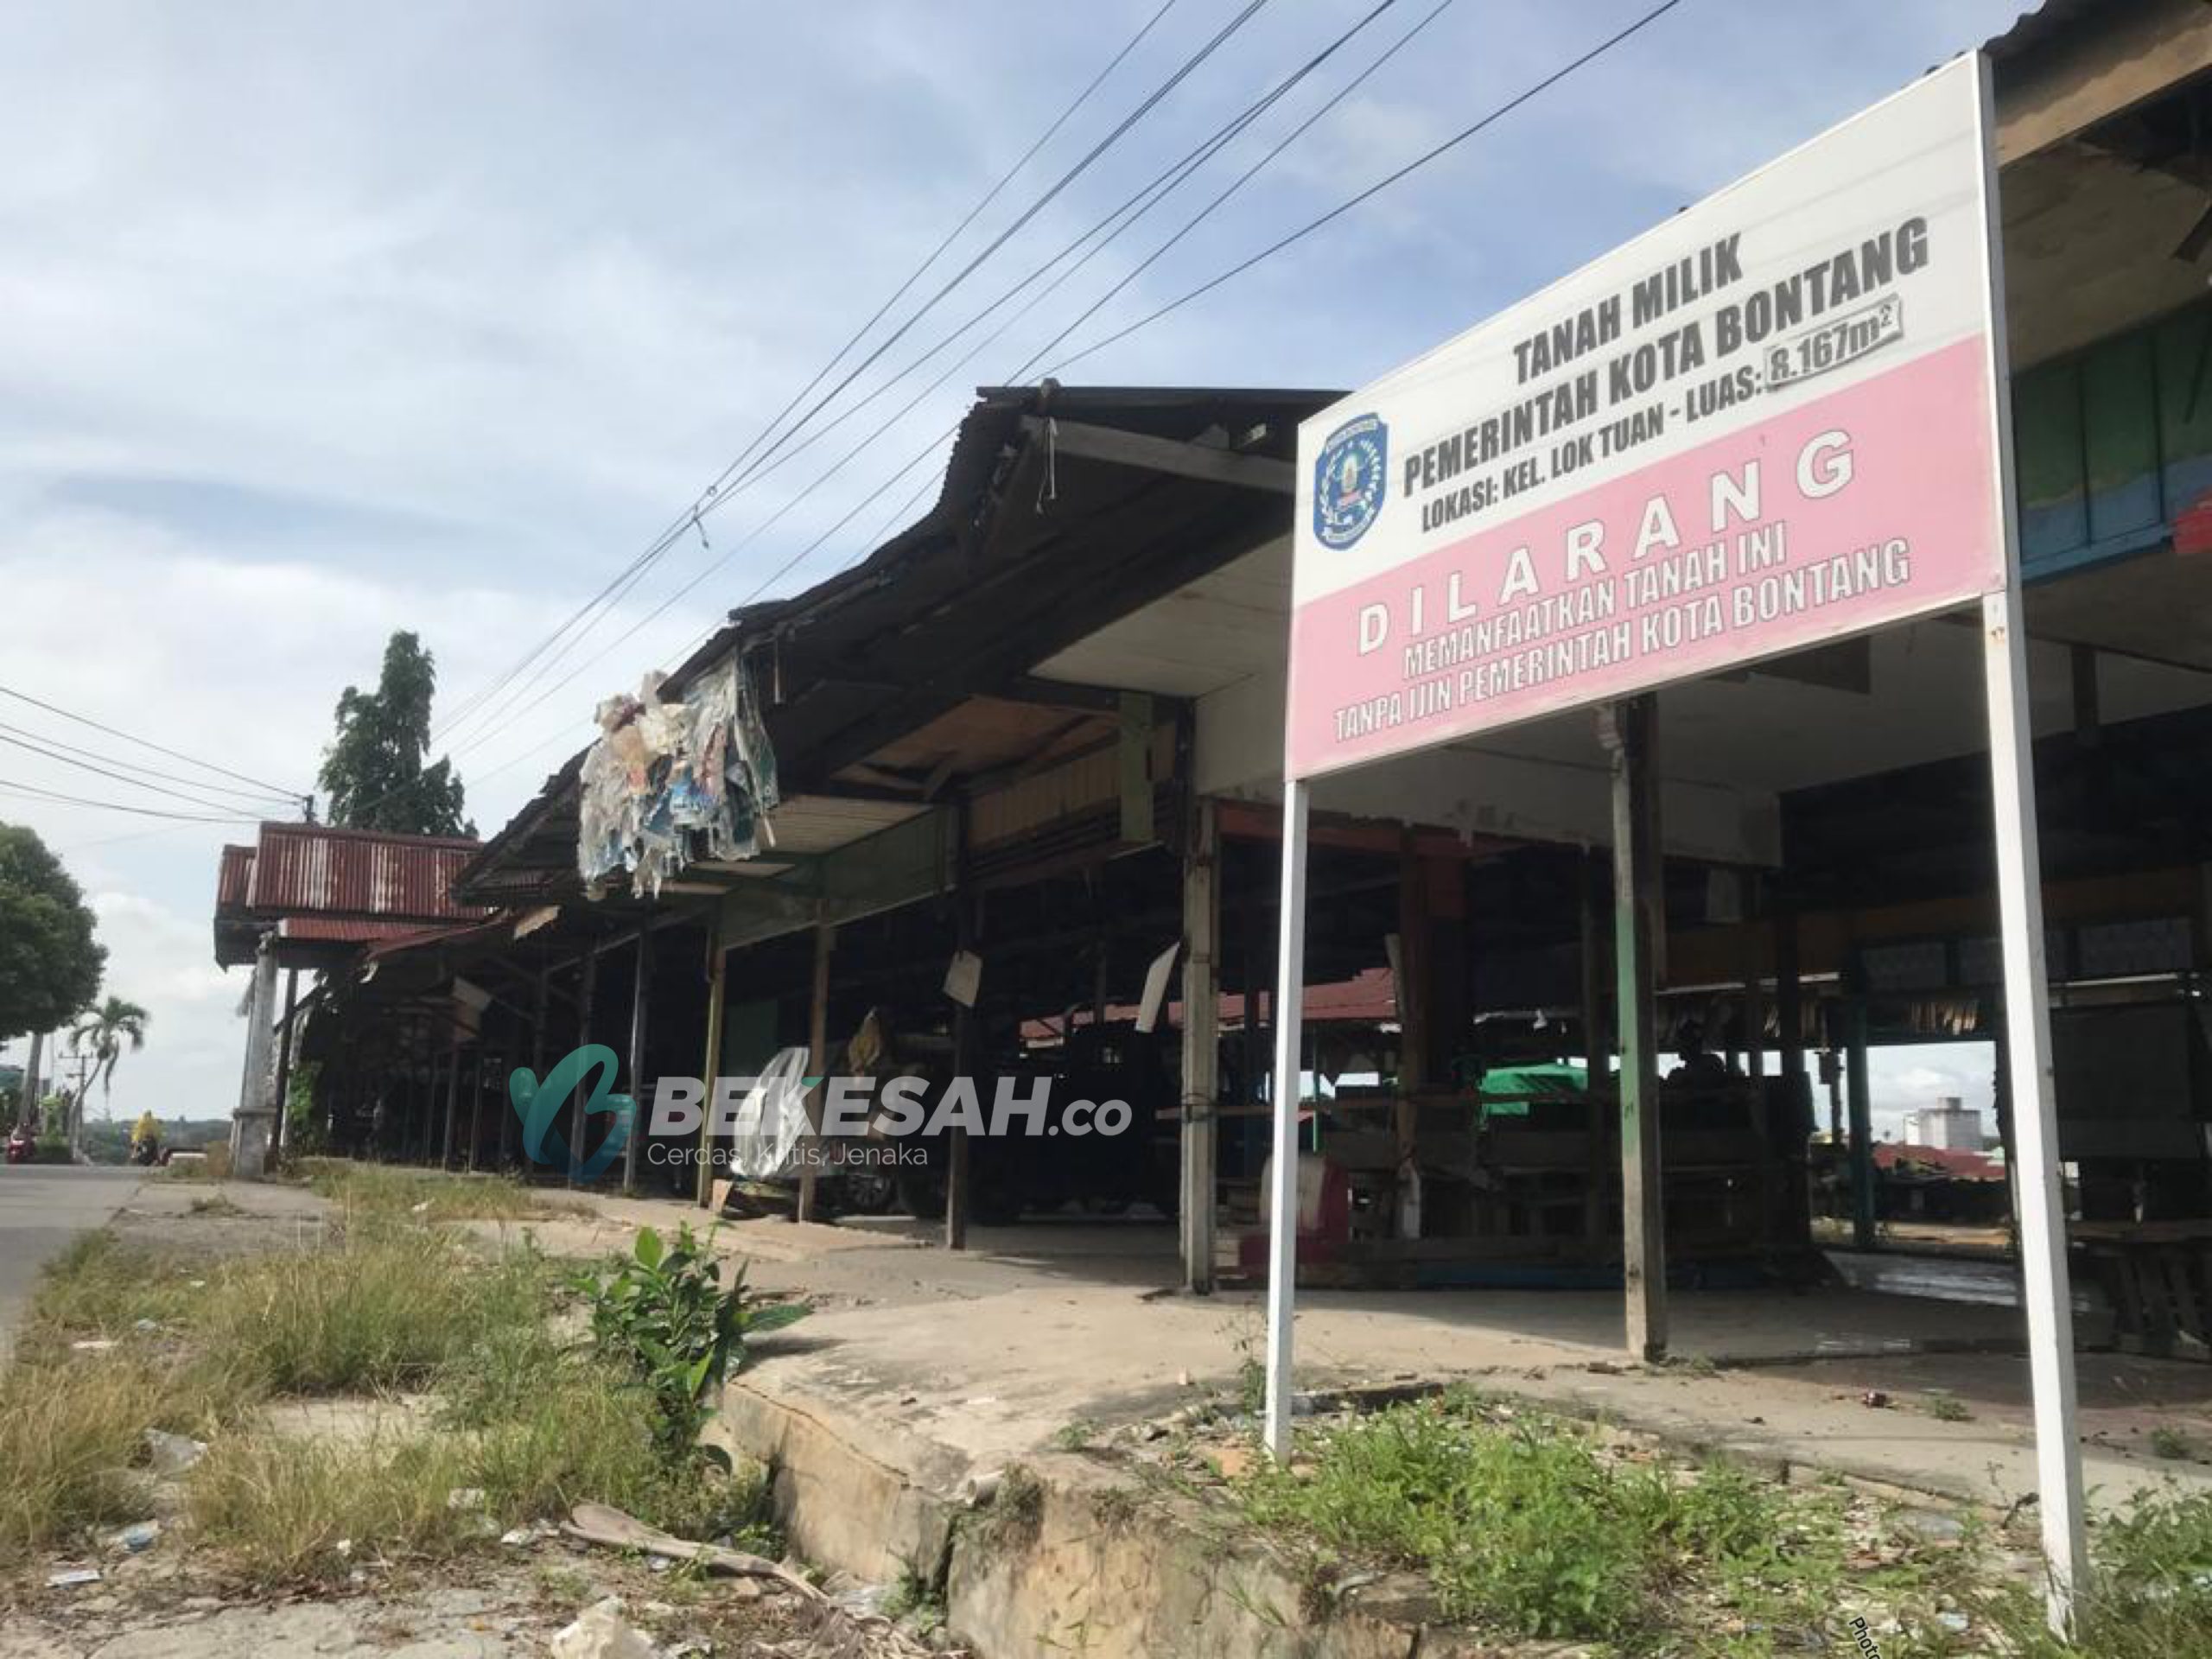 2 Tahun Lahan Kosong, Desakan Bangun Kembali Pasar Citra Mas Loktuan Menguat